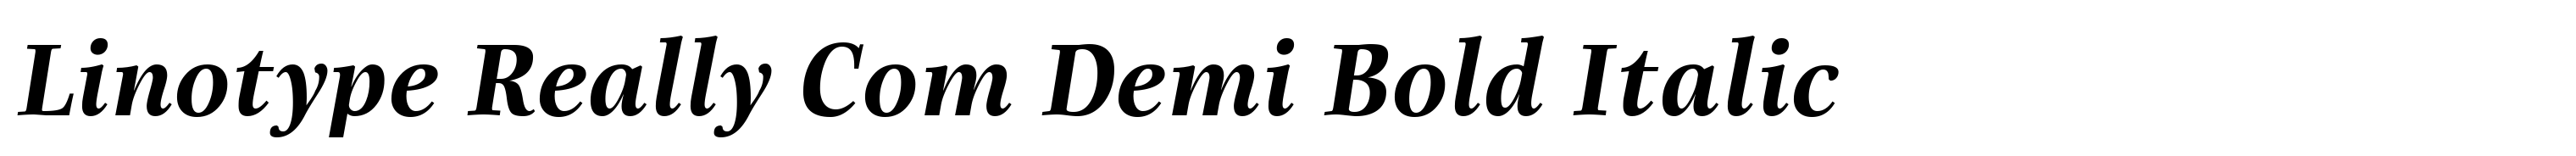 Linotype Really Com Demi Bold Italic